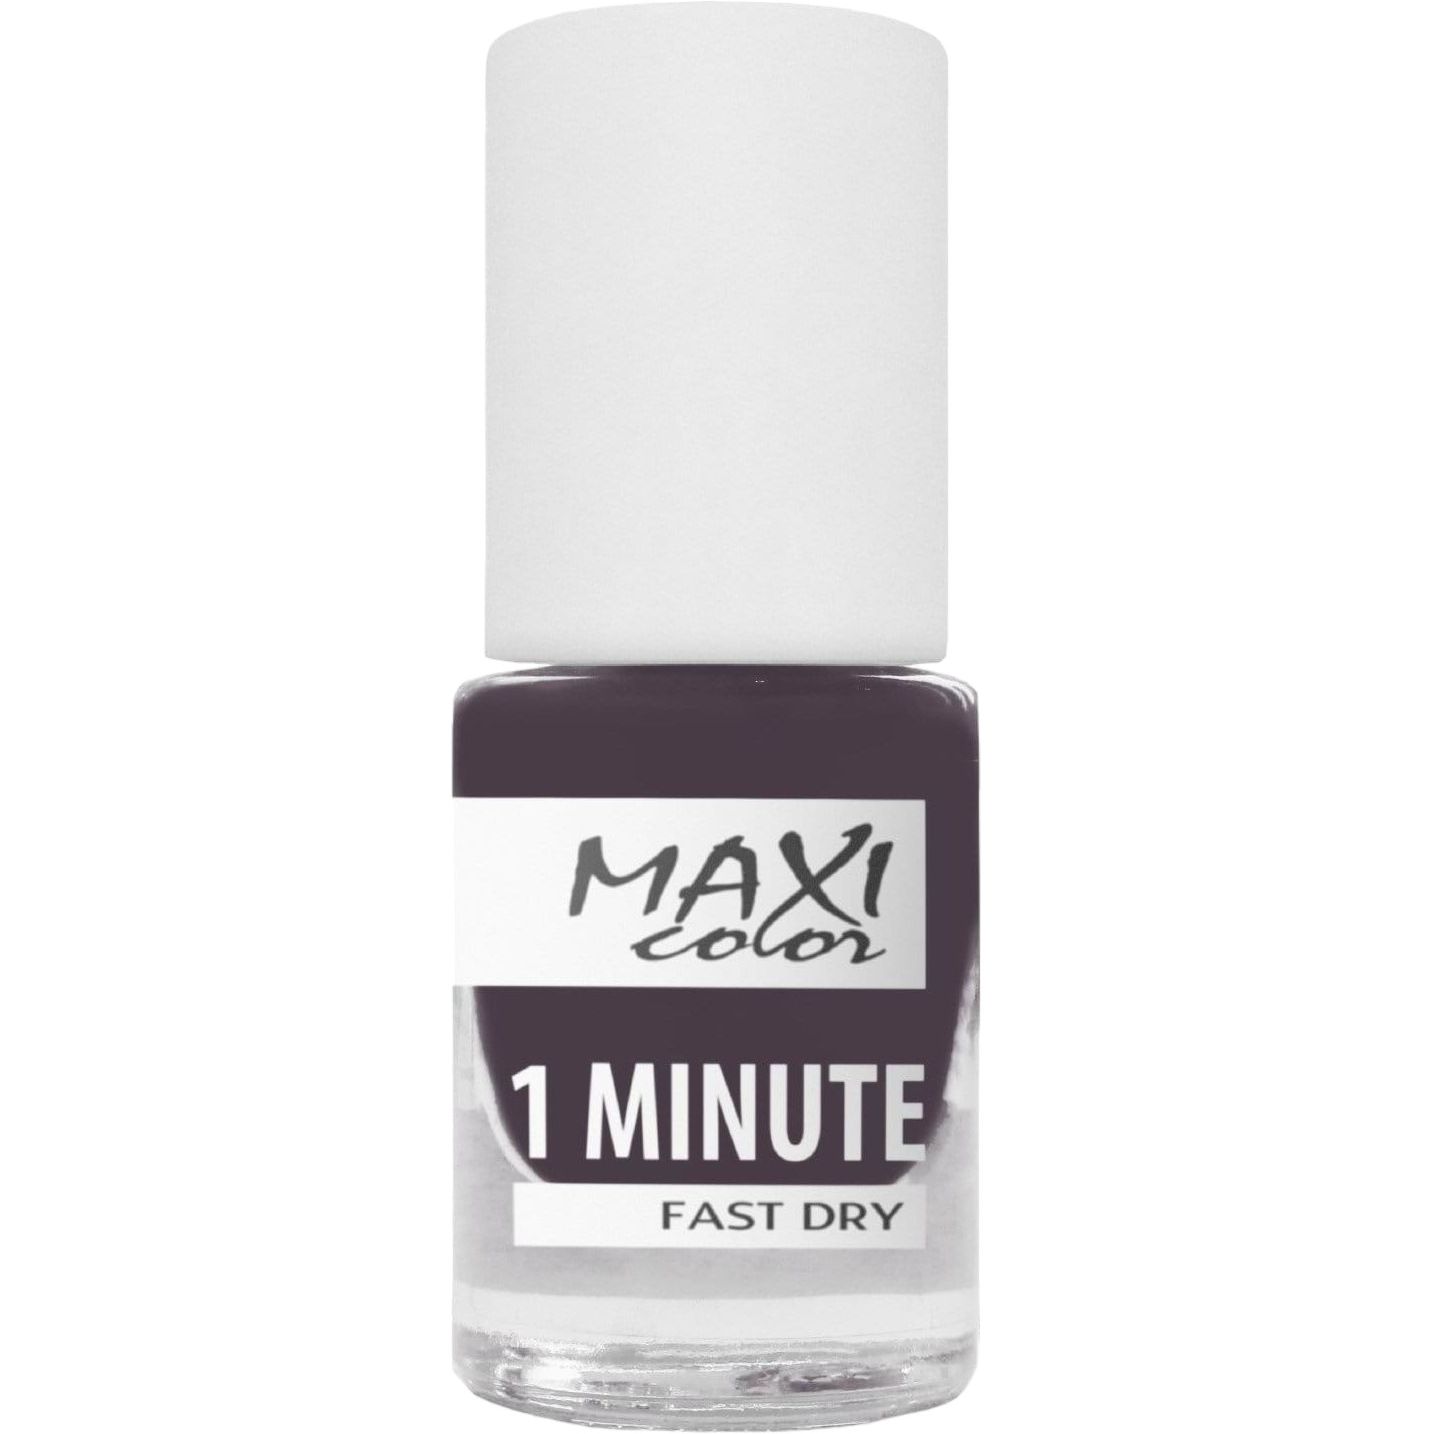 Лак для нігтів Maxi Color 1 Minute Fast Dry відтінок 033, 6 мл - фото 1